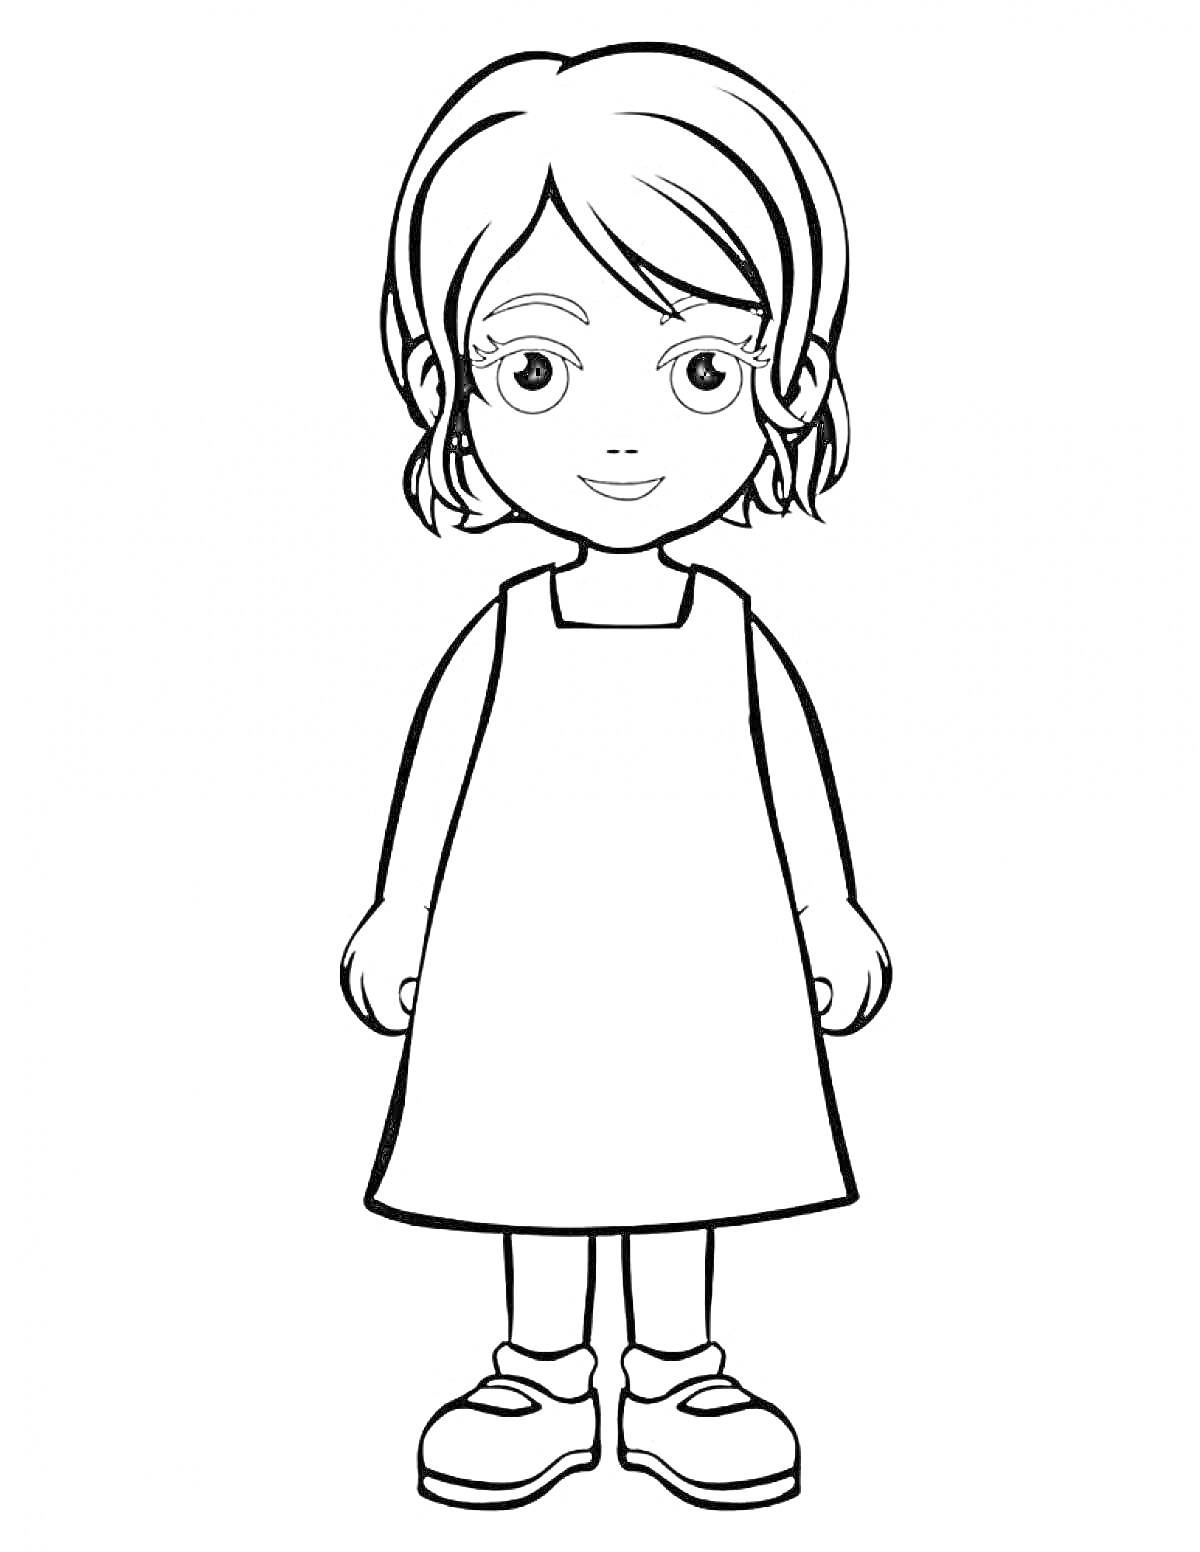 Раскраска Девочка в платье с короткими волосами